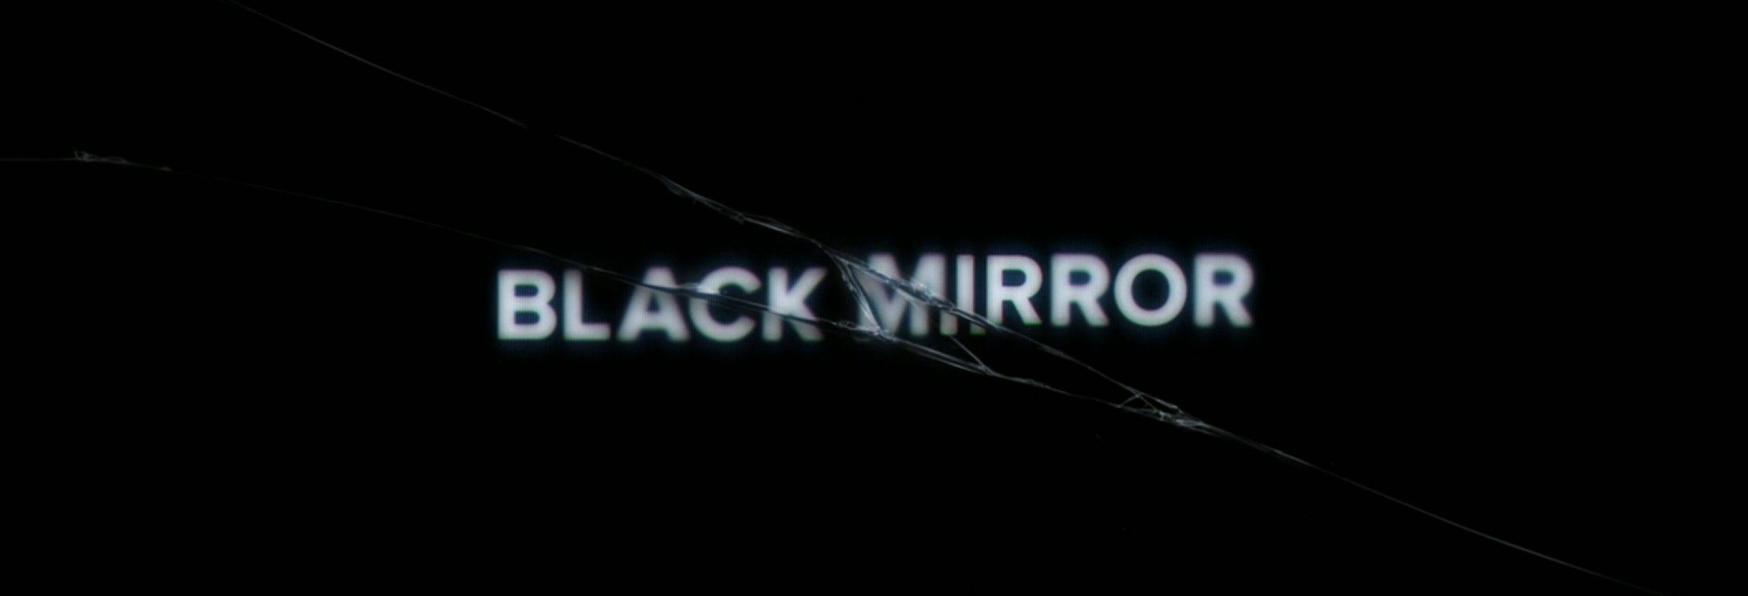 Black Mirror 6: Trama, Cast, Anticipazioni, Data di Uscita e Trailer della nuova Stagione